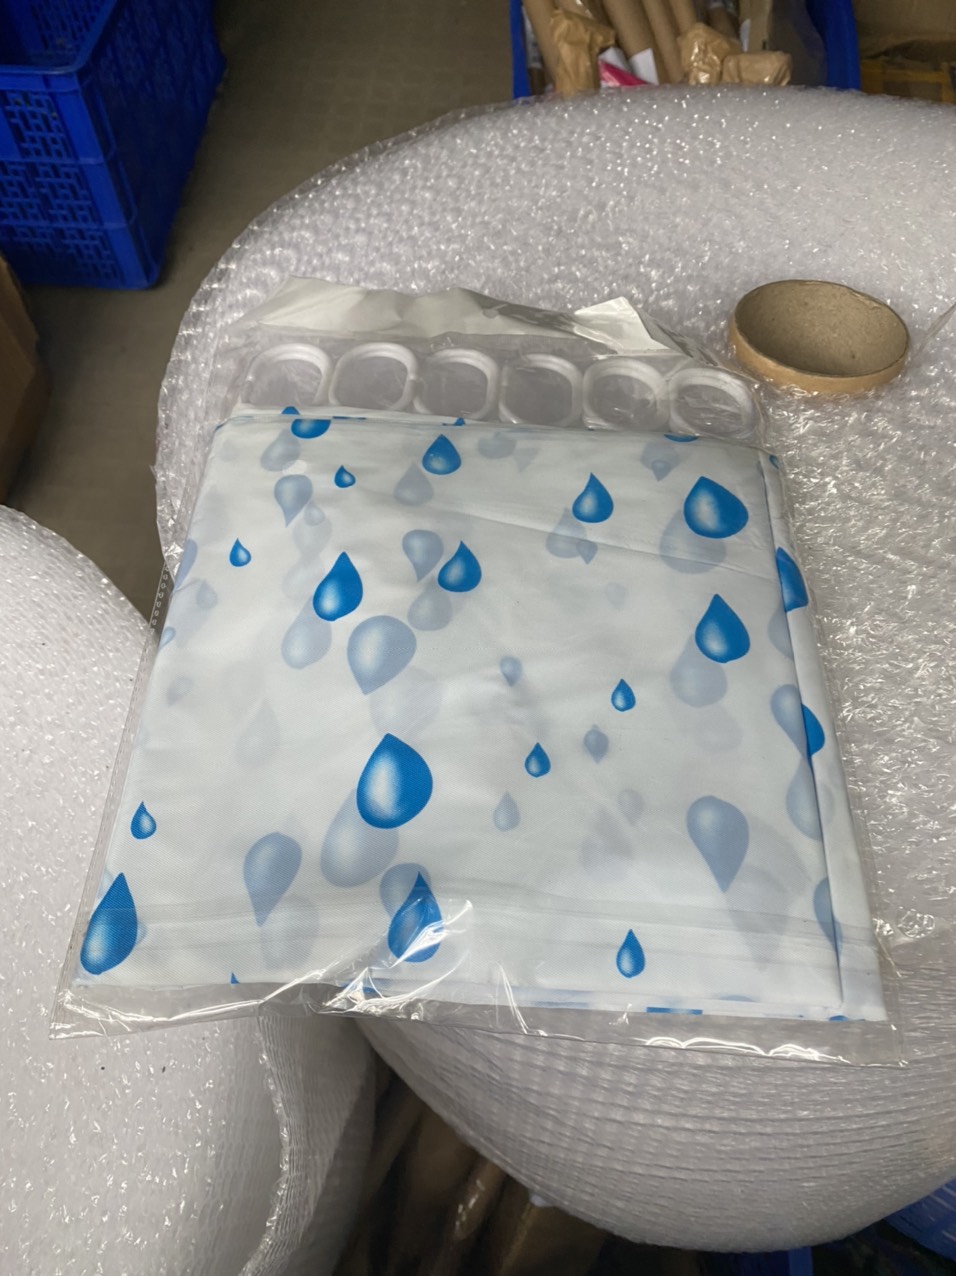 Rèm phòng tắm nhựa PEVA chống thấm nước 1.8m x 1.8m cao kèm 12 móc GIÁ RẺ